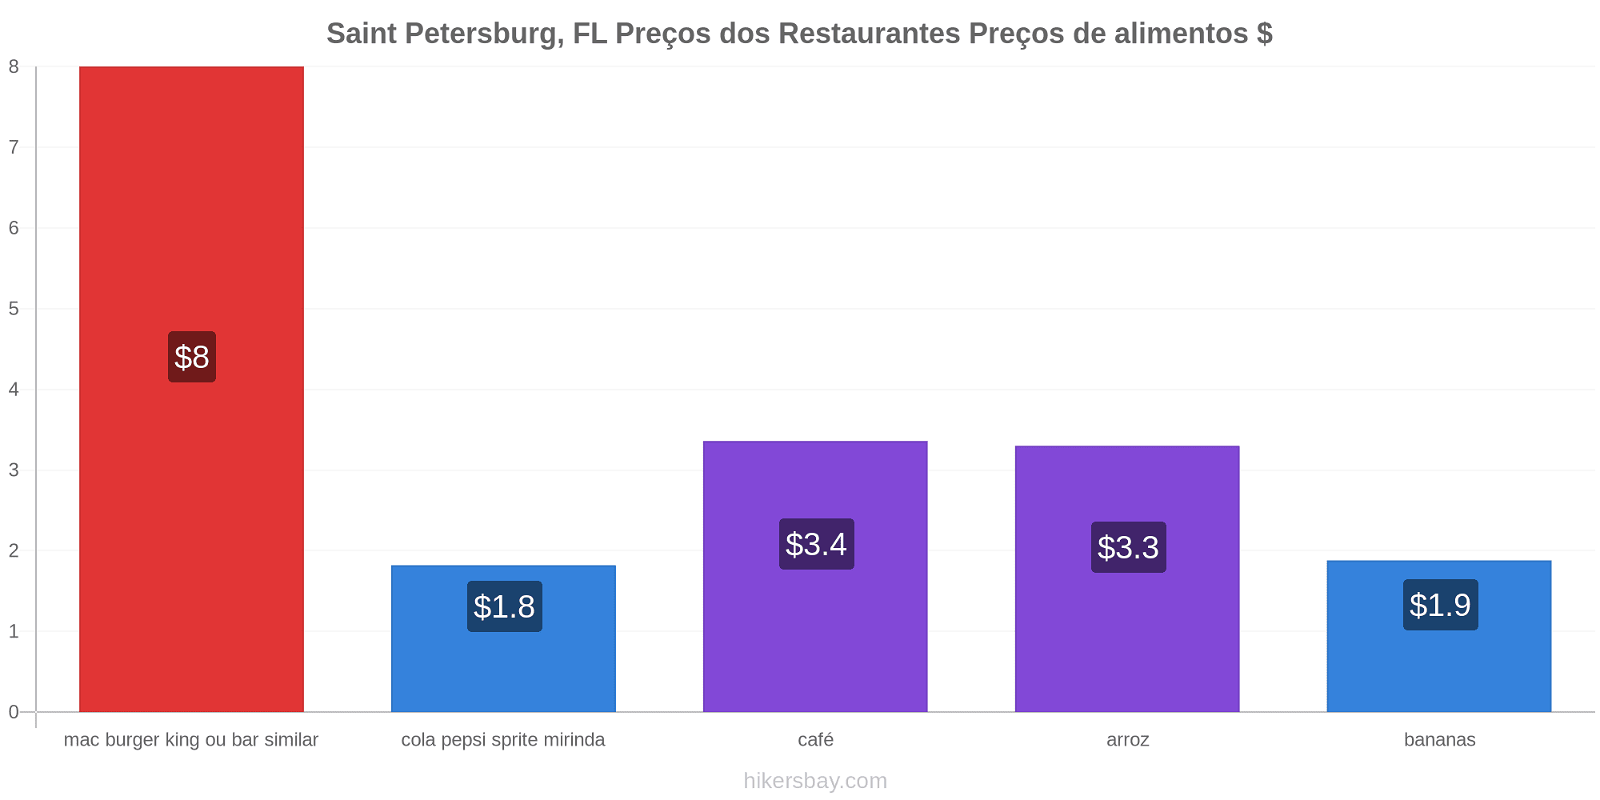 Saint Petersburg, FL mudanças de preços hikersbay.com